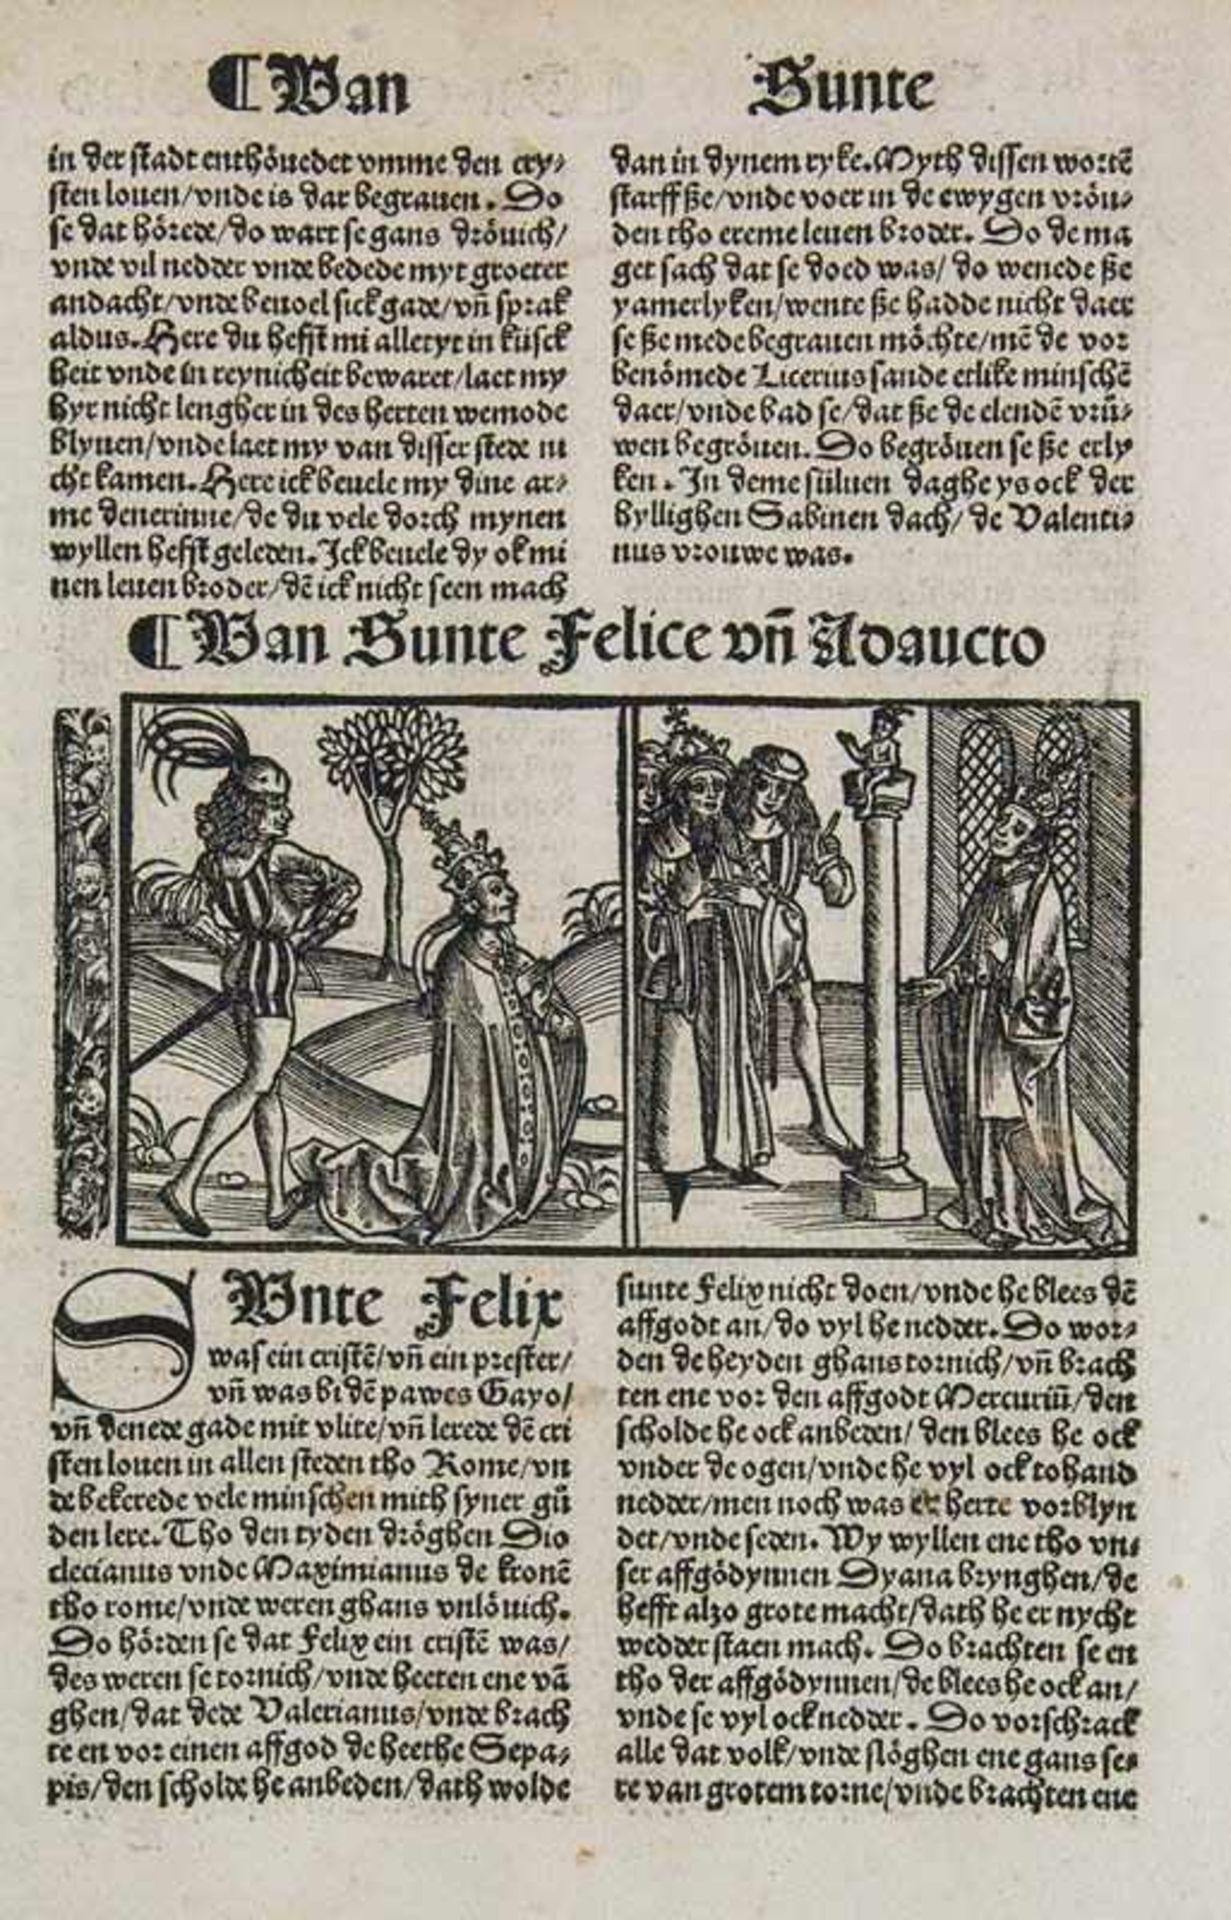 Postinkunabel - - Jacobus de Voragine. (Passional efte dat Levent der Hylligen to Dude, uth demm